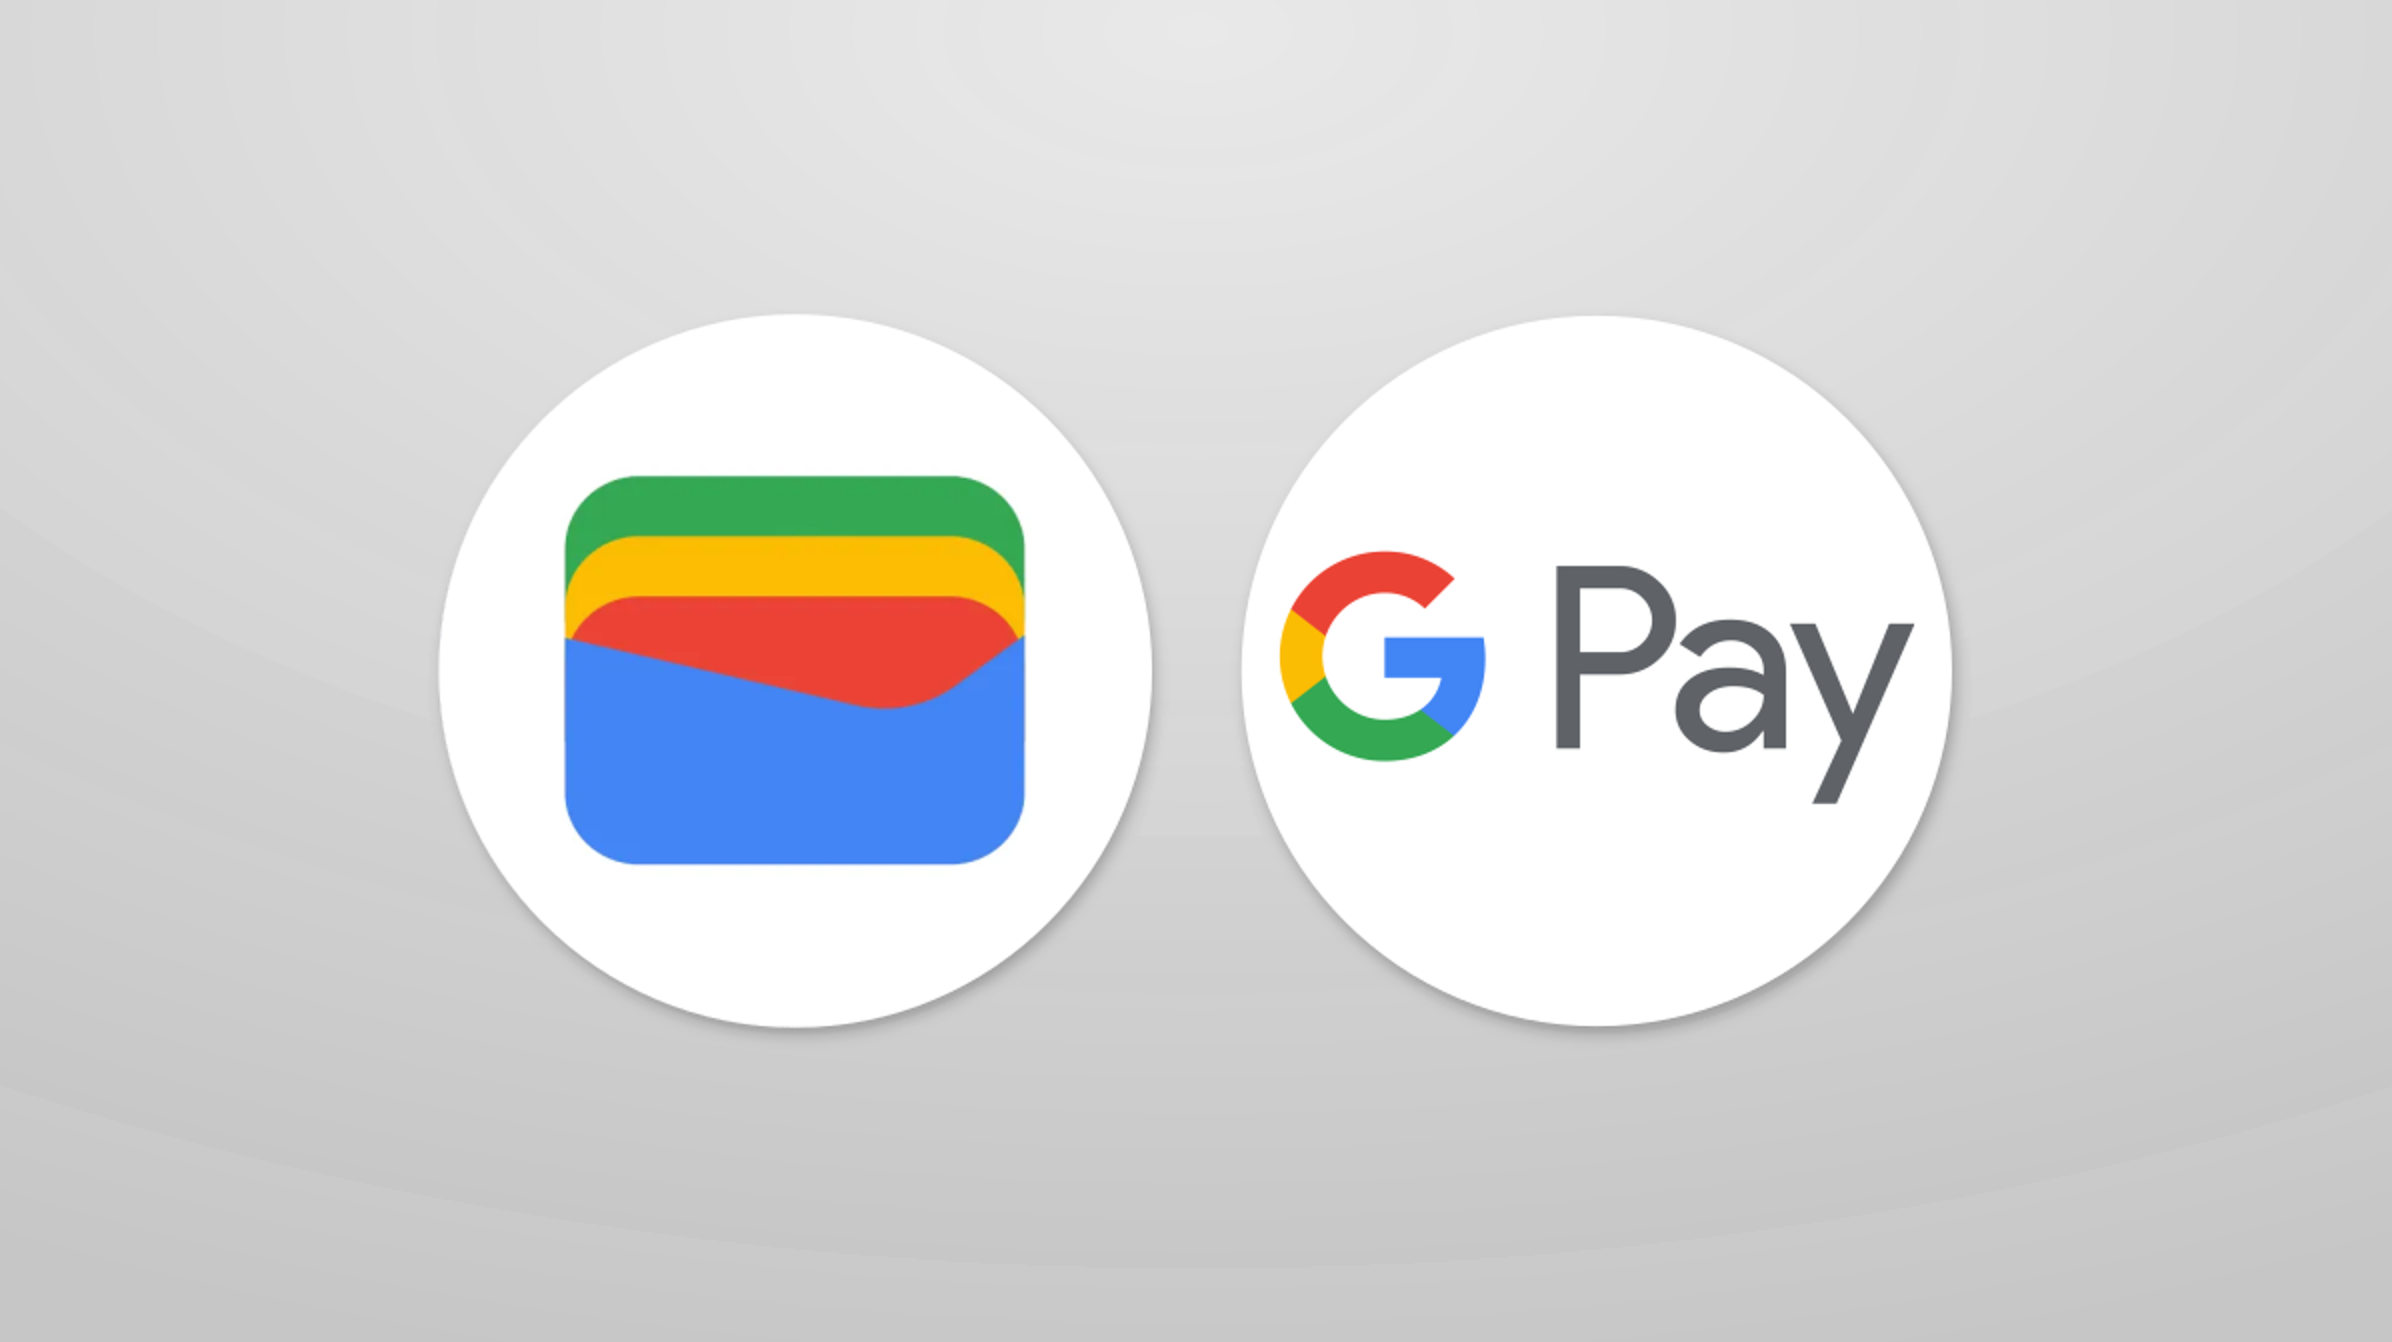 Google a accidentellement offert jusqu'à 1000 dollars aux utilisateurs réguliers de Google Pay qui n'ont pas besoin d'être remboursés.